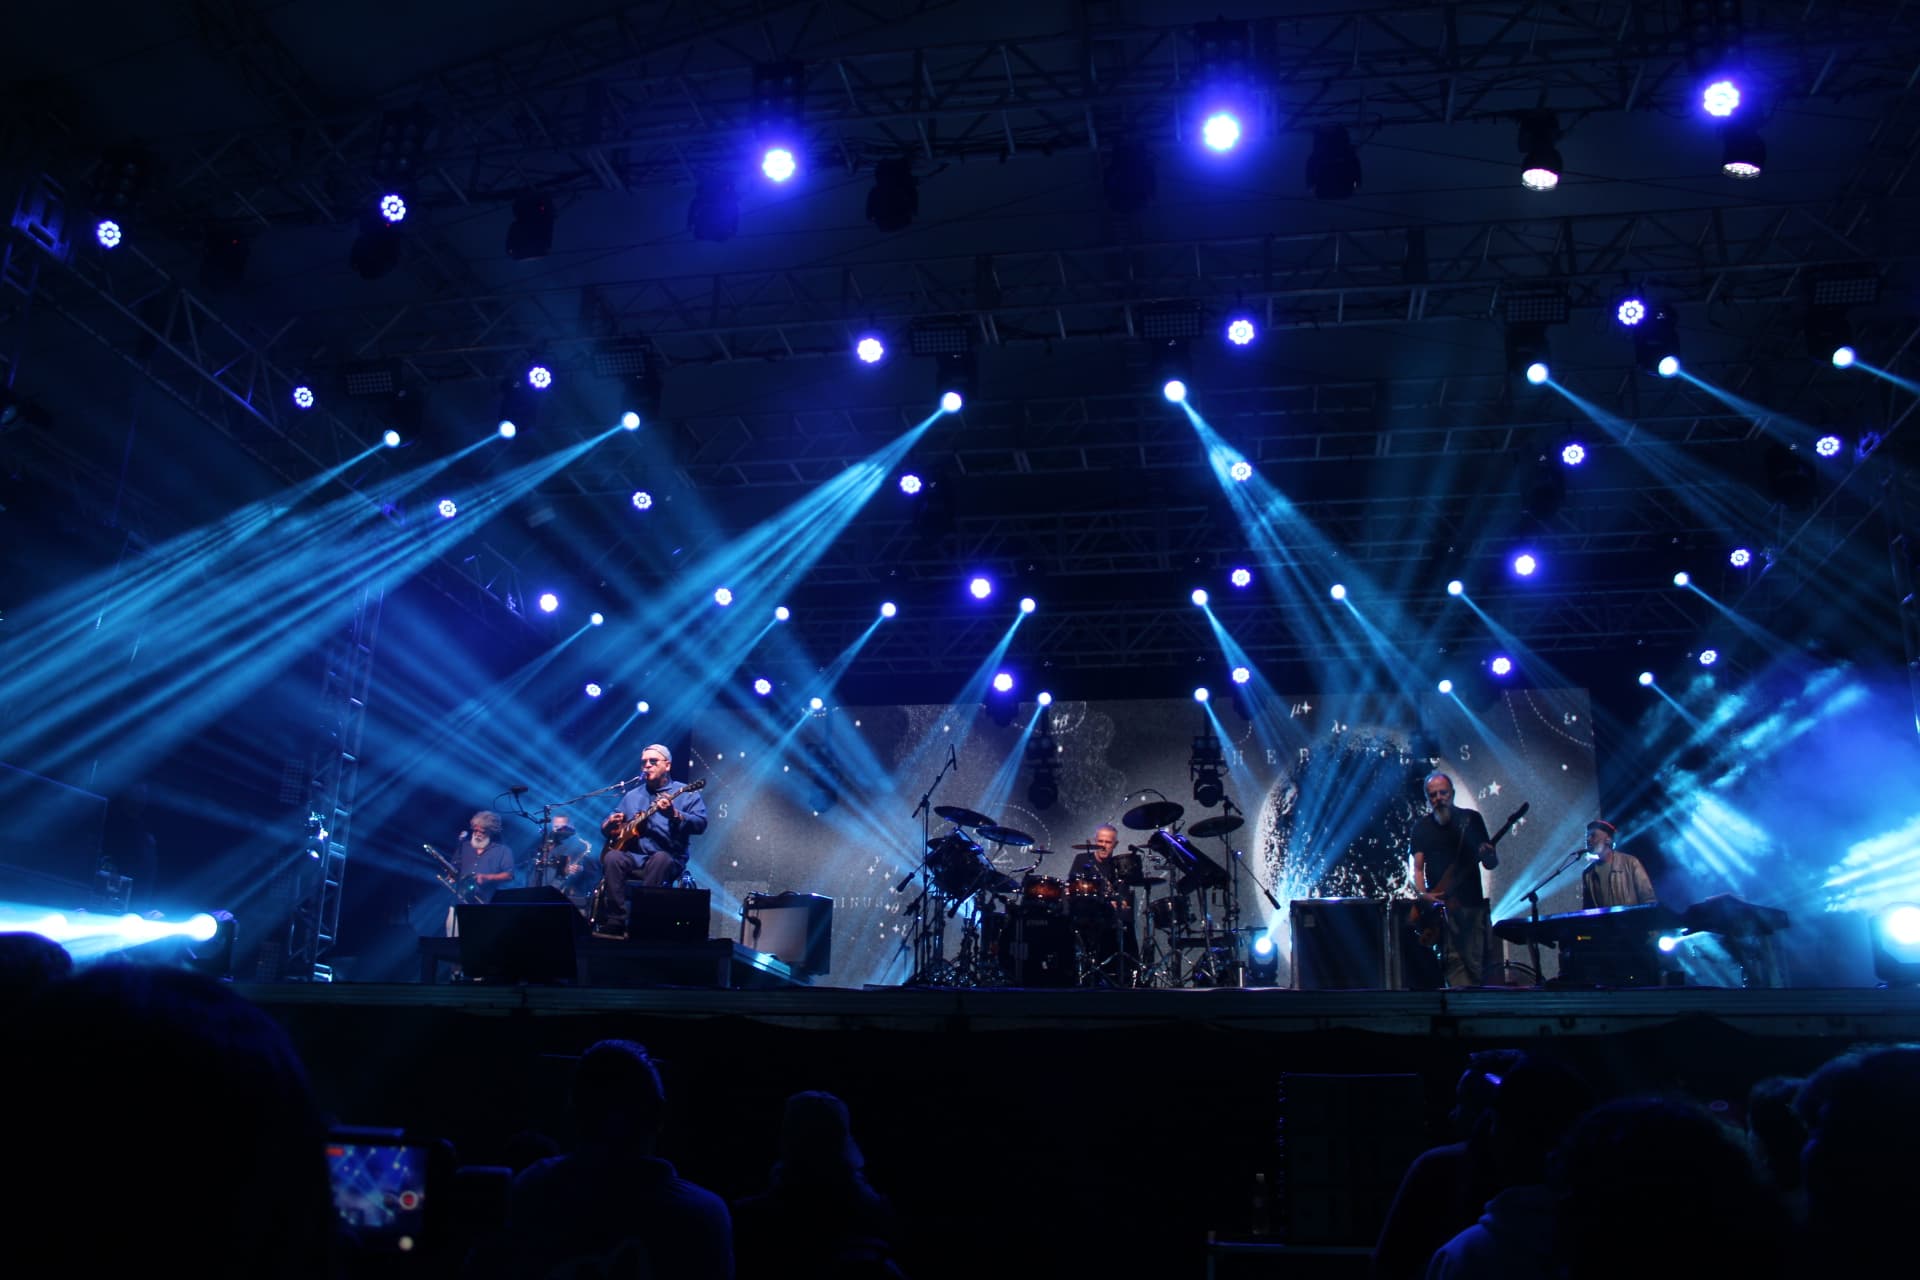 Imagem mostra a banda paralamas do sucesso em seu show em matinhos, a banda está em cima do palco, com diversas luzes no tom azul